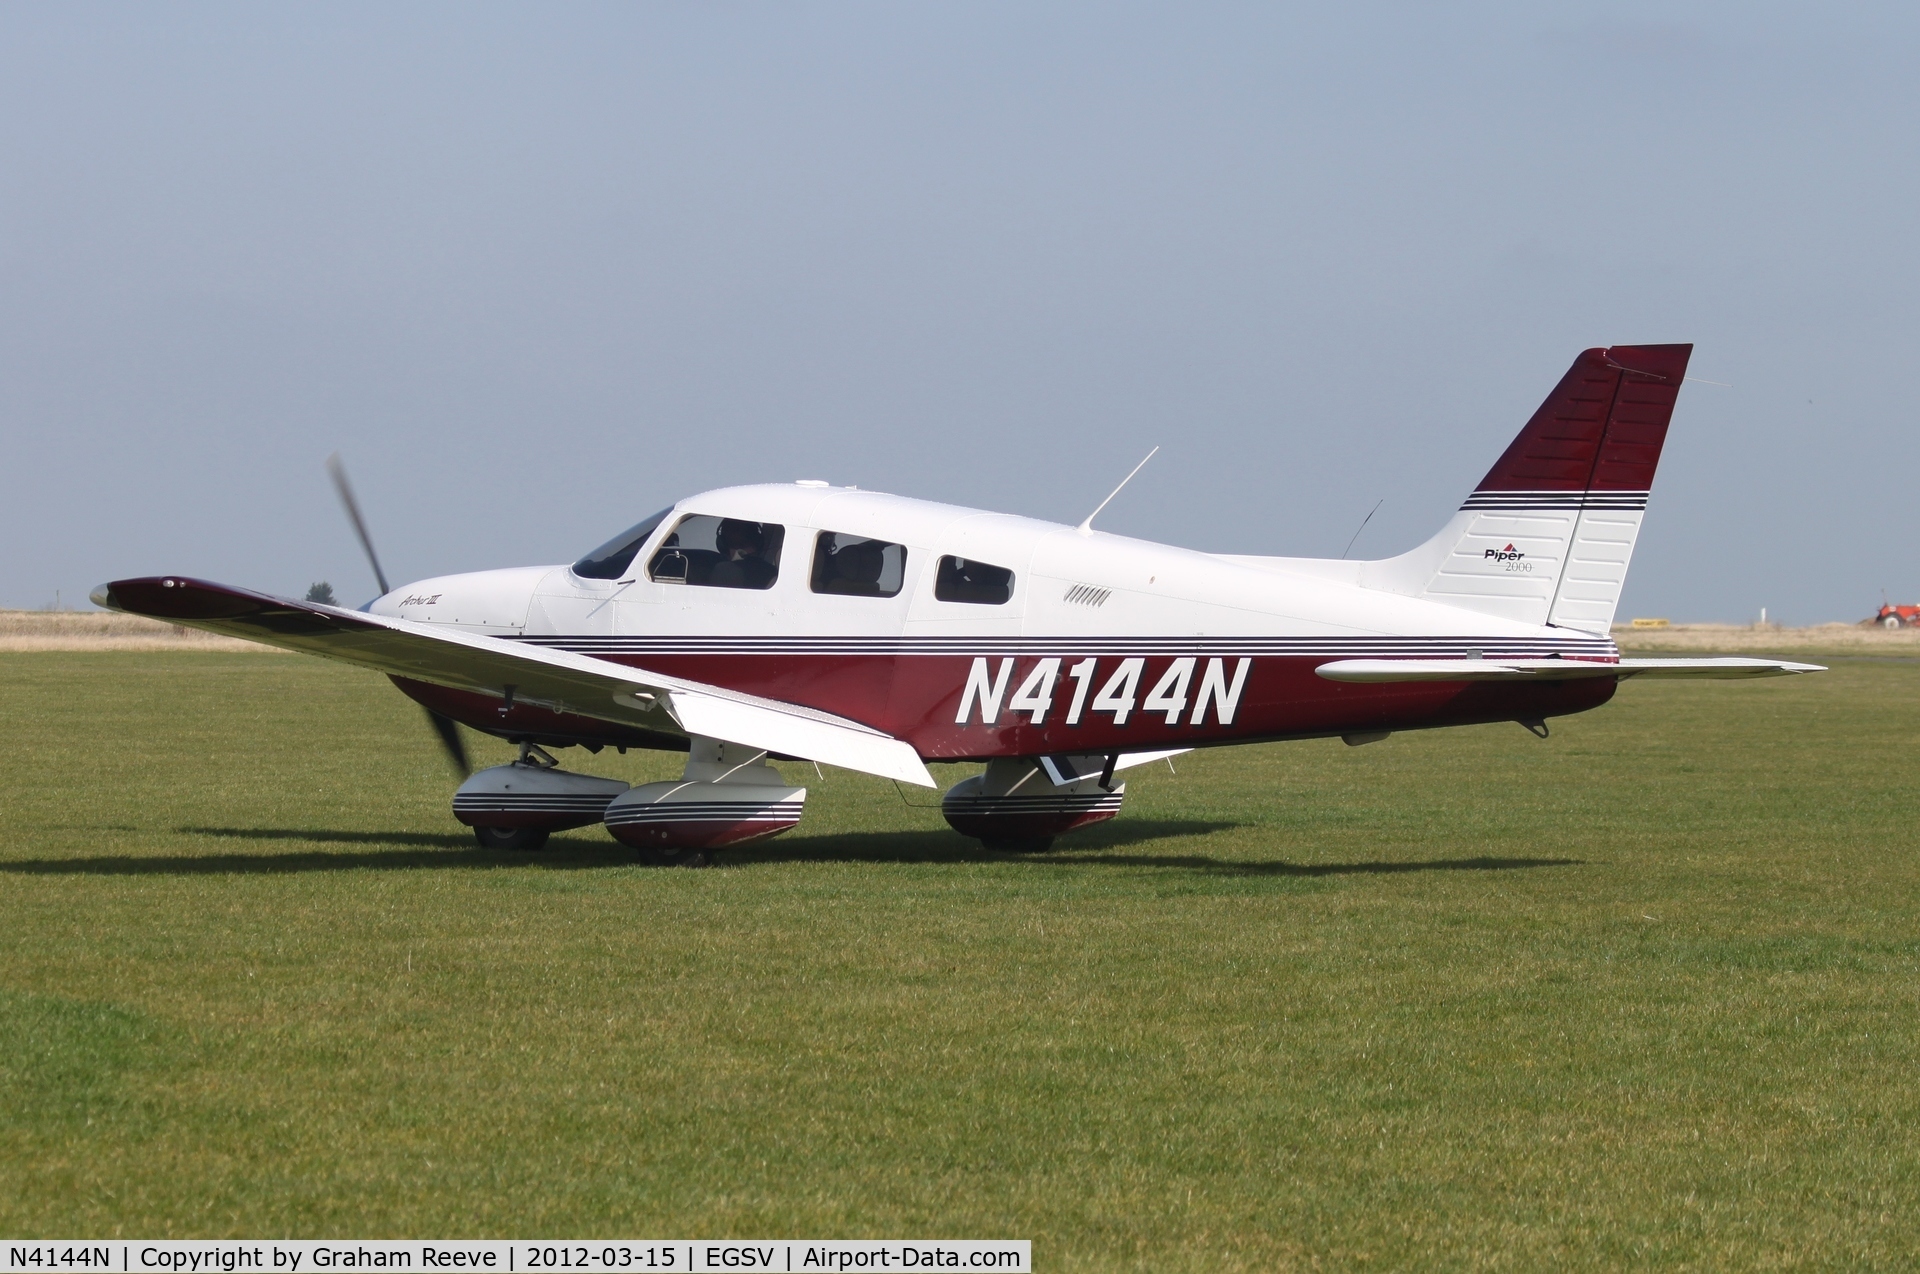 N4144N, 2000 Piper PA-28-181 Cherokee Archer III C/N 2843361, Just arrived at Old Buckenham.